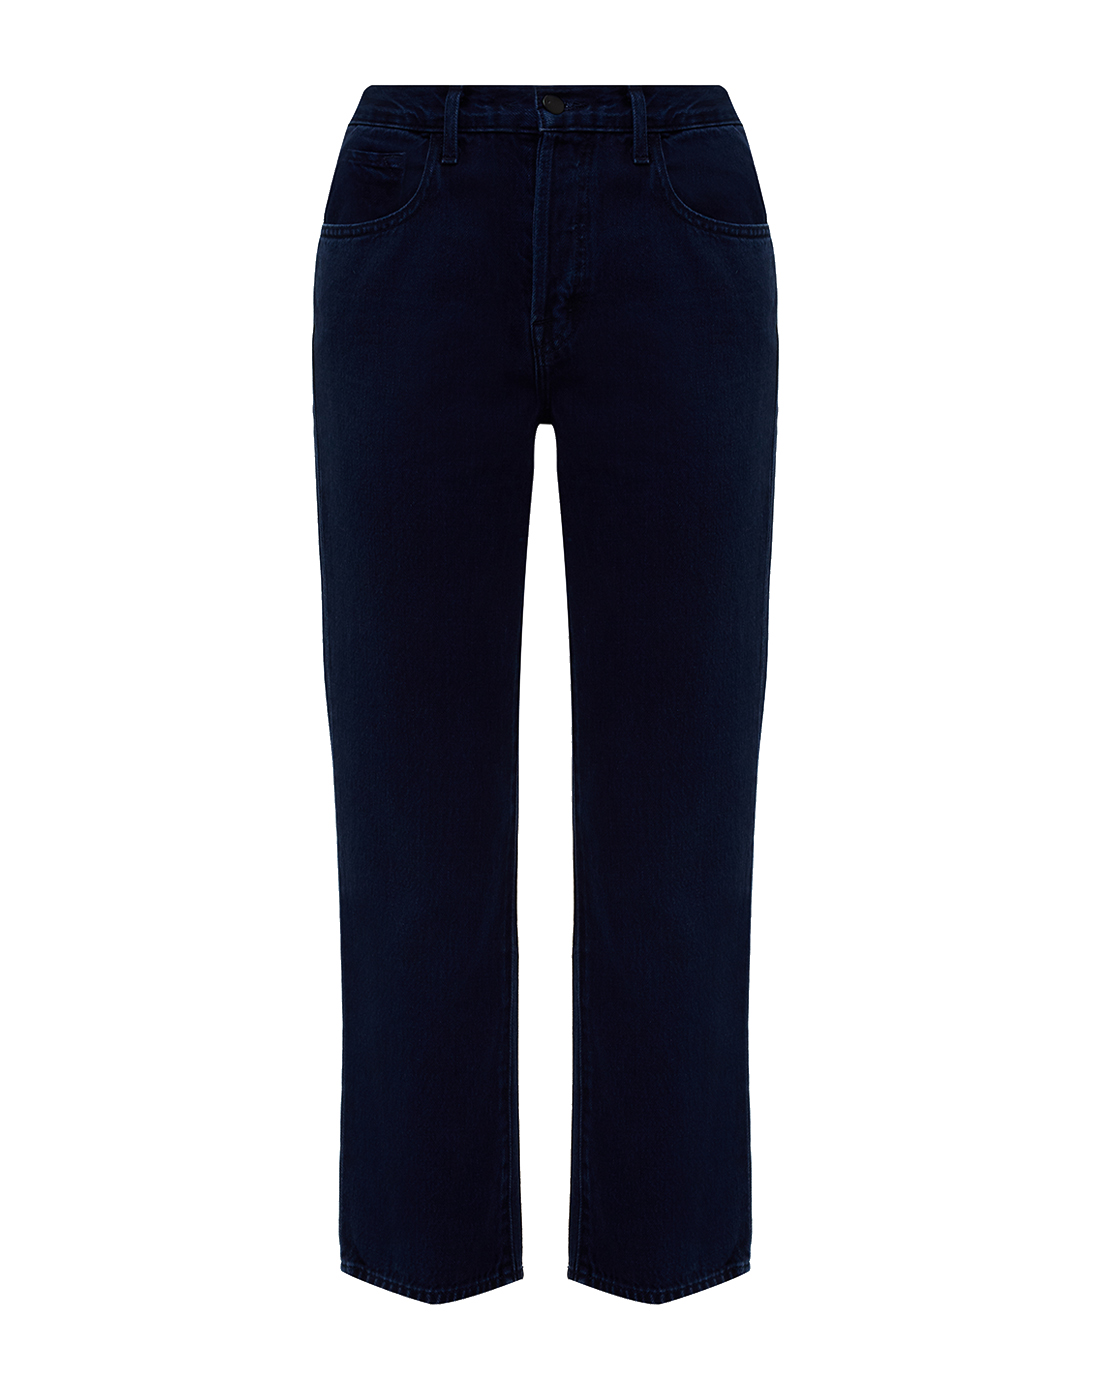 Женские синие джинсы J BRAND SJB001225/A-1